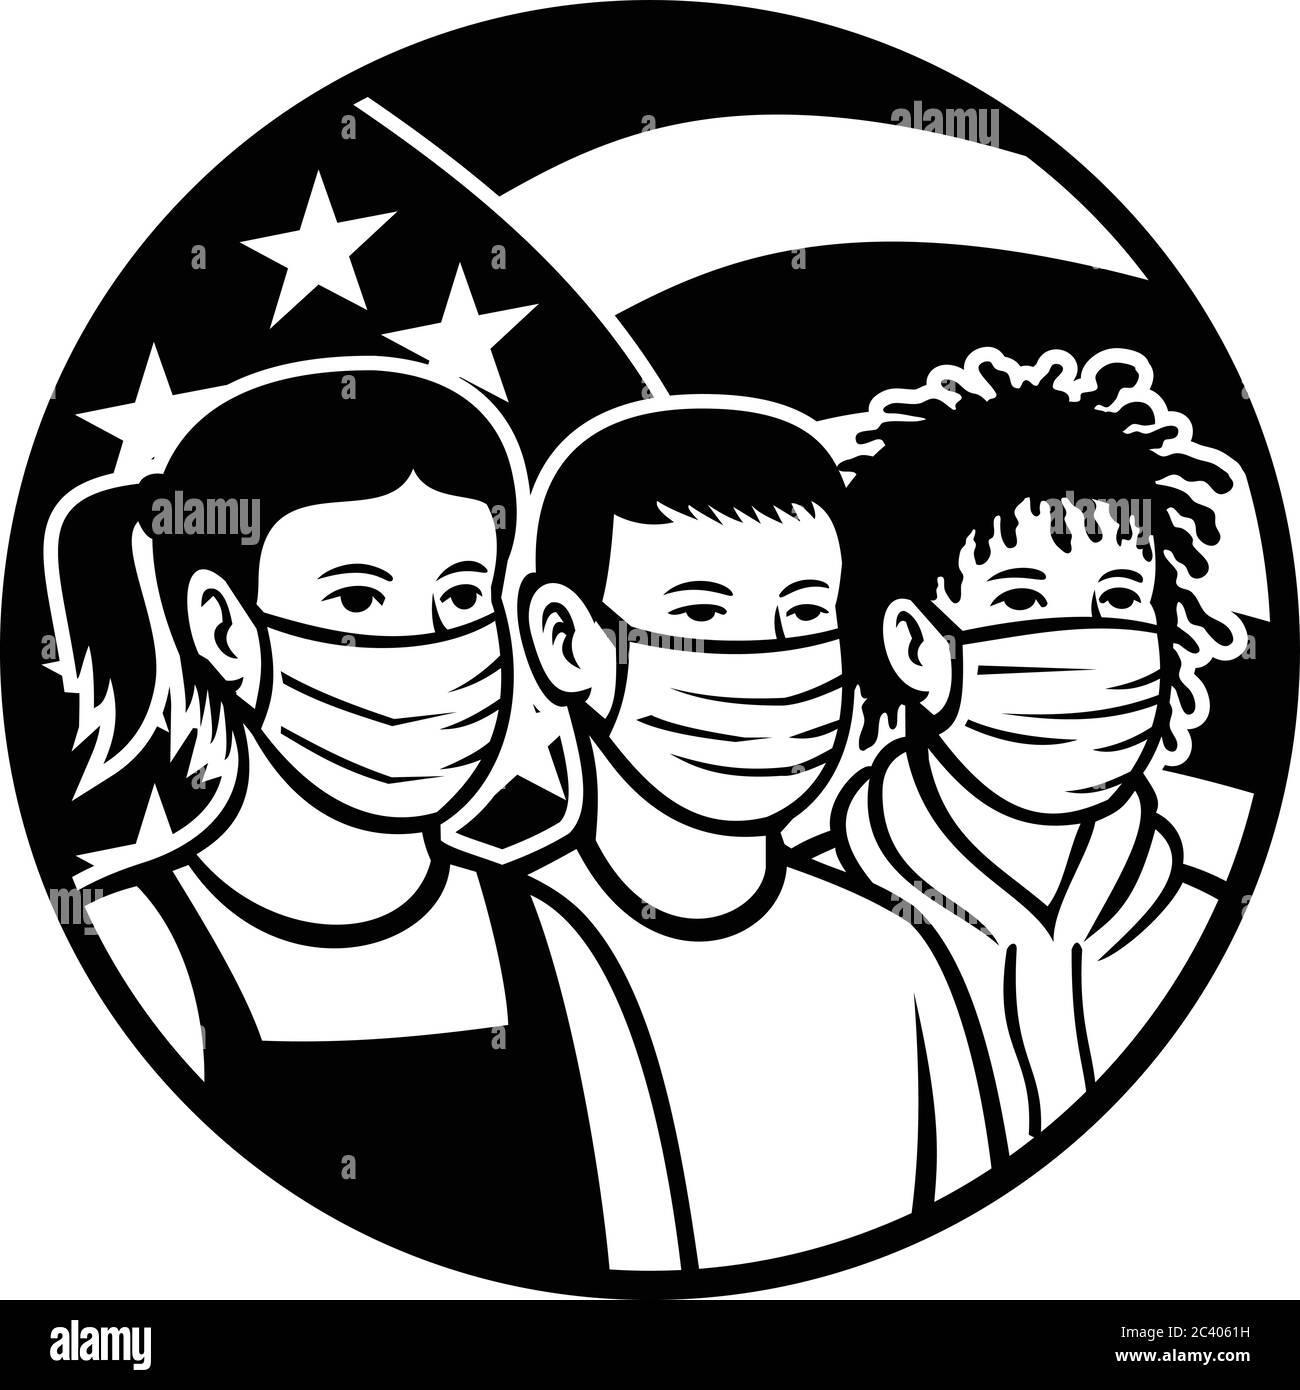 Illustrazione in stile retrò bianco e nero di bambini americani di razza o etnia diversa indossando maschera facciale con stelle USA e strisce di bandiera set Illustrazione Vettoriale